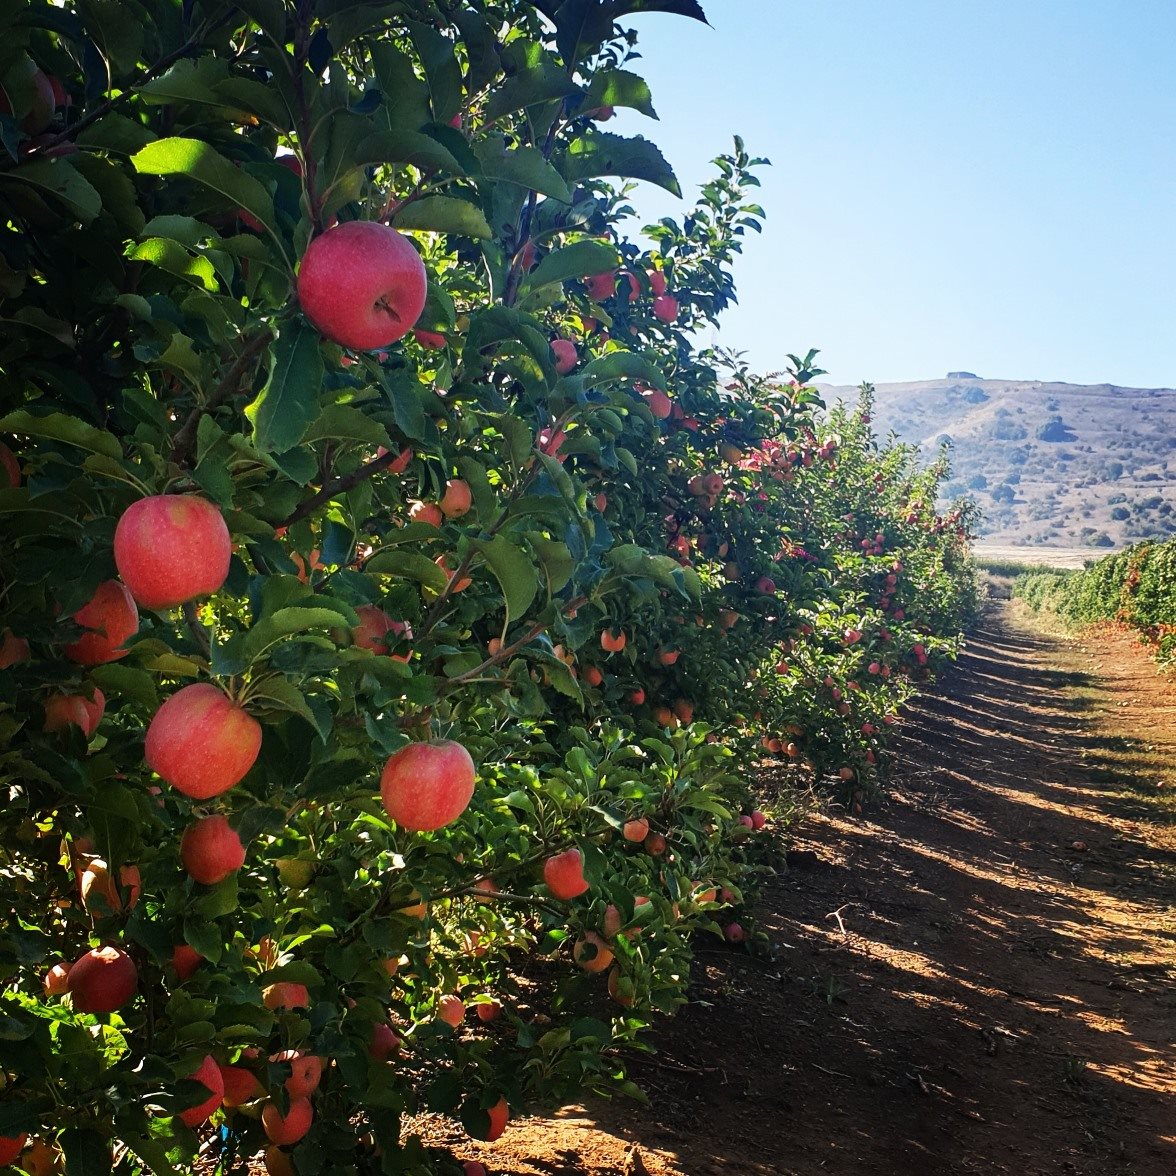 מטע תפוח מזן פינק ליידי בגולן- צילום תקשורות יעל שביט